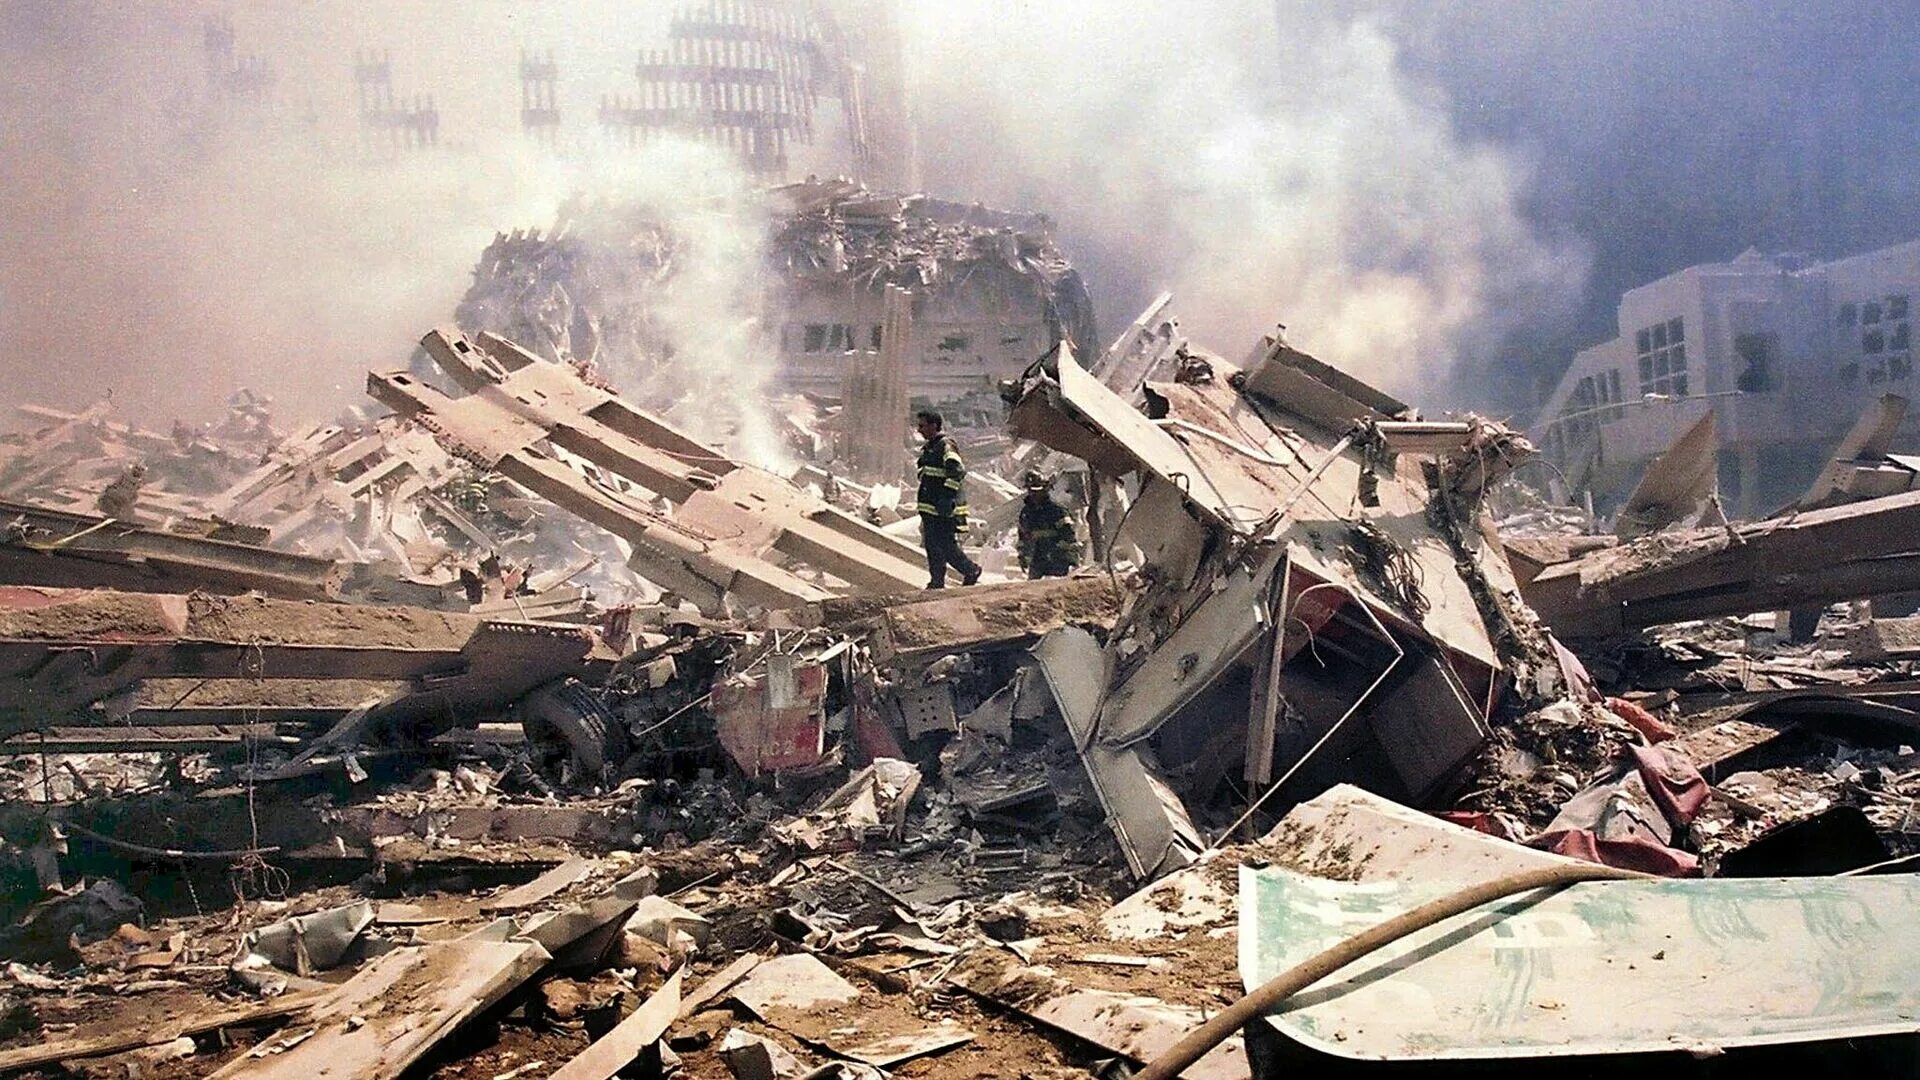 23 октября 2001 года. Теракт в Нью-Йорке 11 сентября 2001. 11 Сентября 2001 года Пентагон. Обломки ВТЦ 11 сентября.